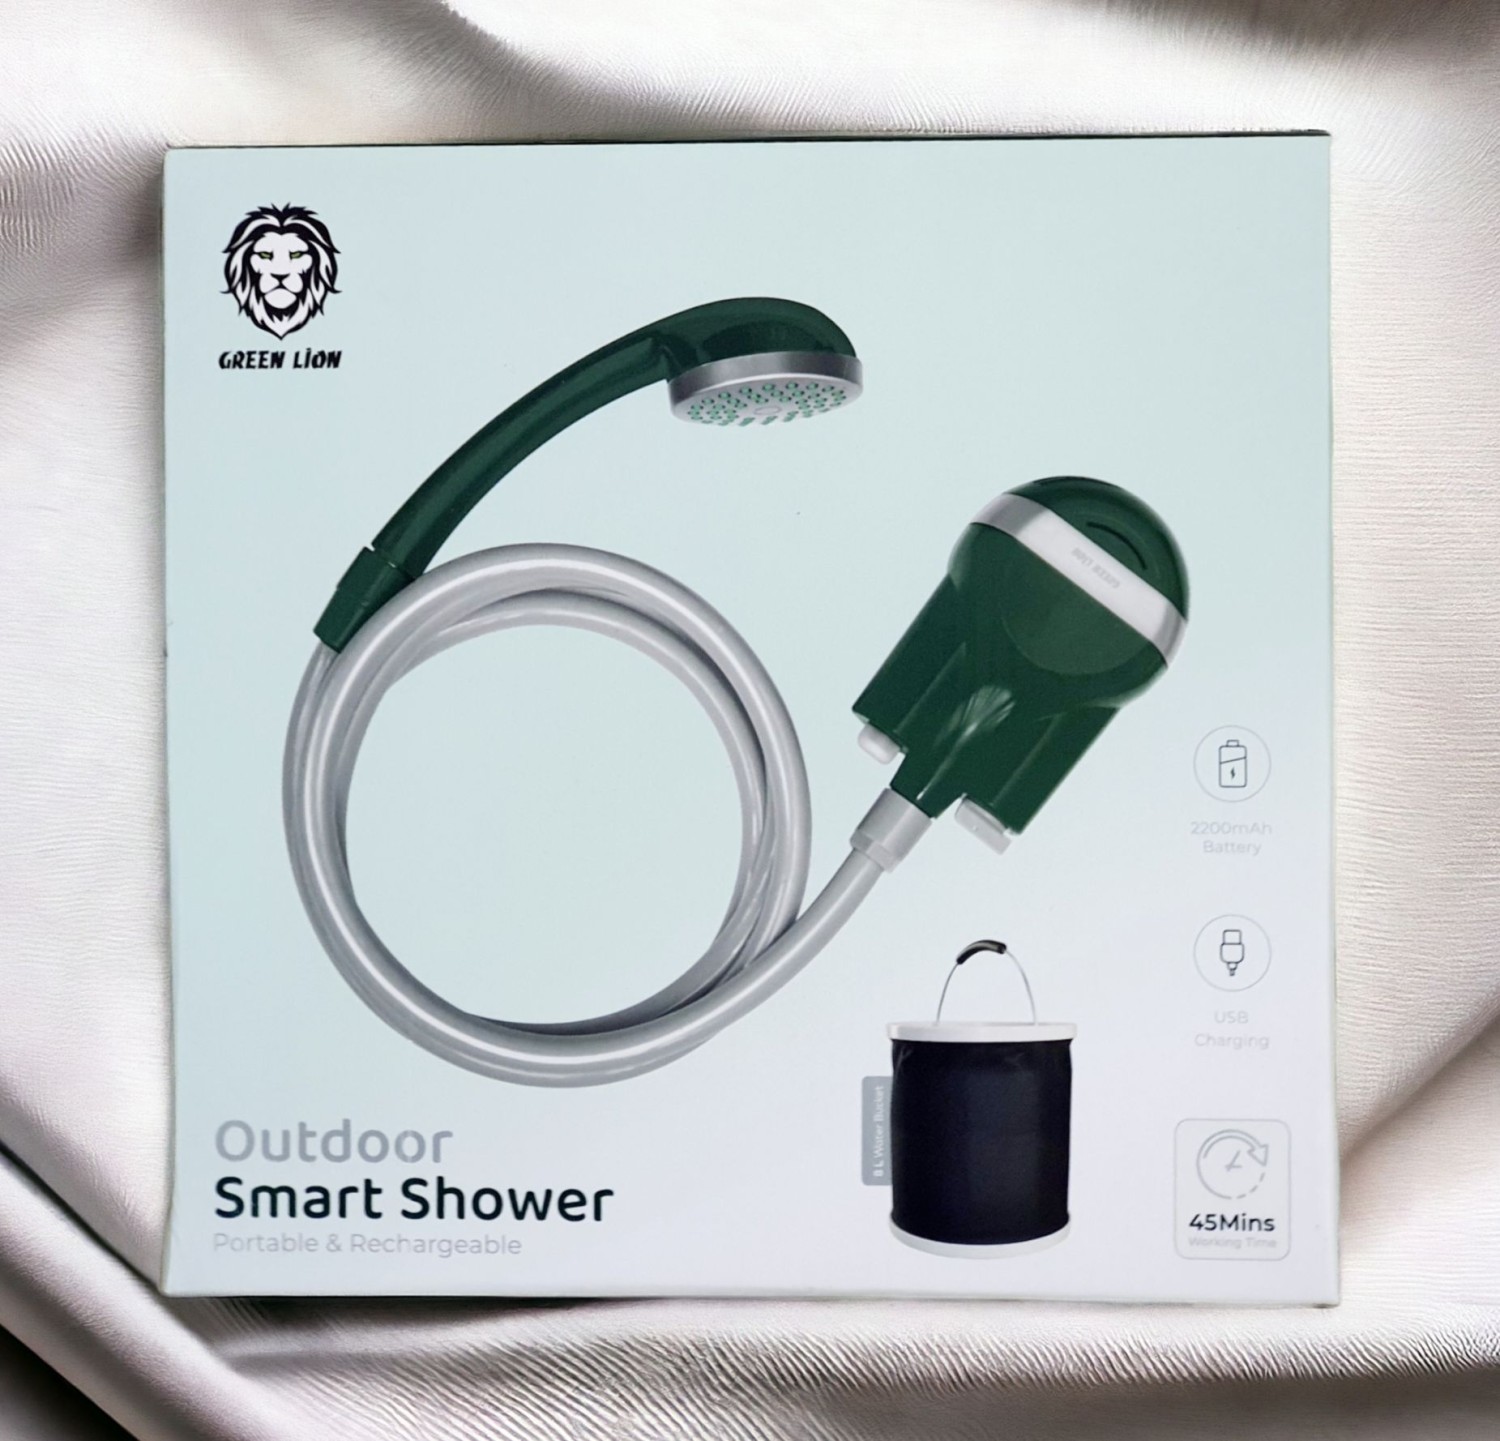 Green Lion Outdoor Smart Shower